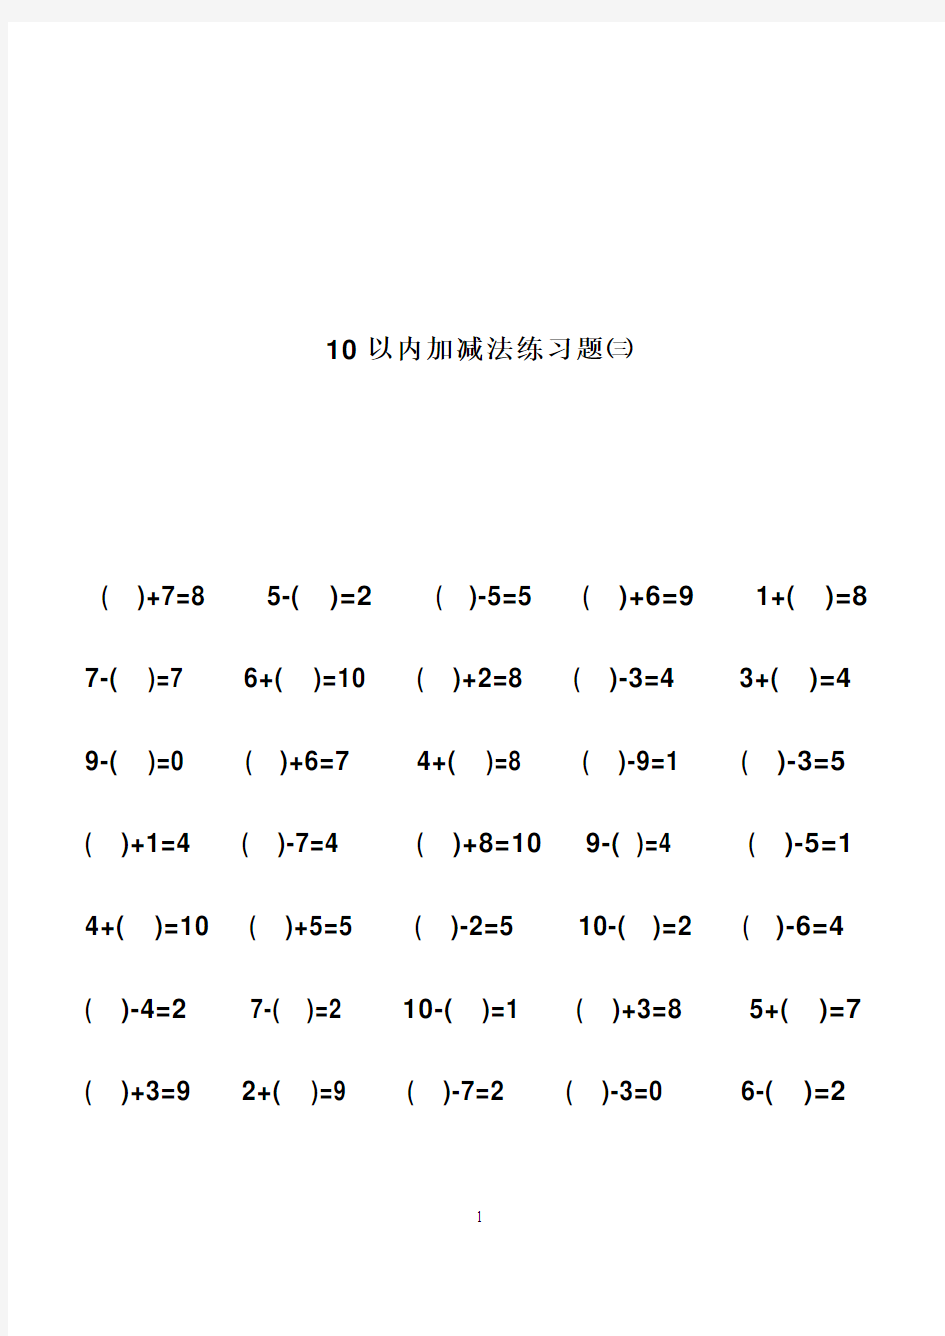 幼儿算术---10以内加减法练习题_直接打印版